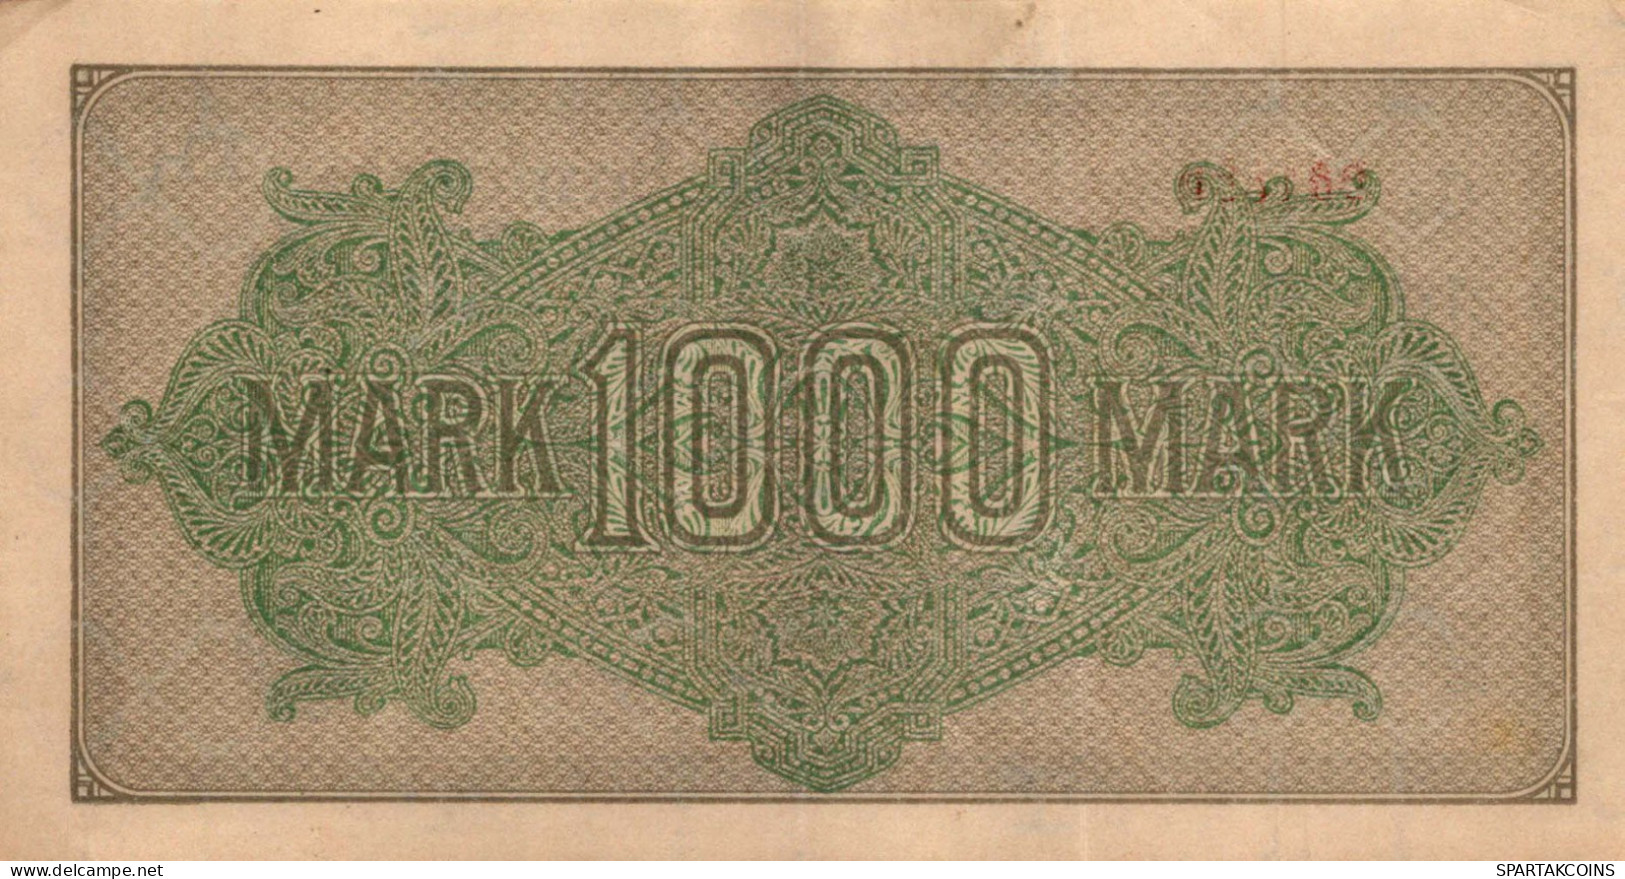 1000 MARK 1922 Stadt BERLIN DEUTSCHLAND Papiergeld Banknote #PL455 - [11] Local Banknote Issues